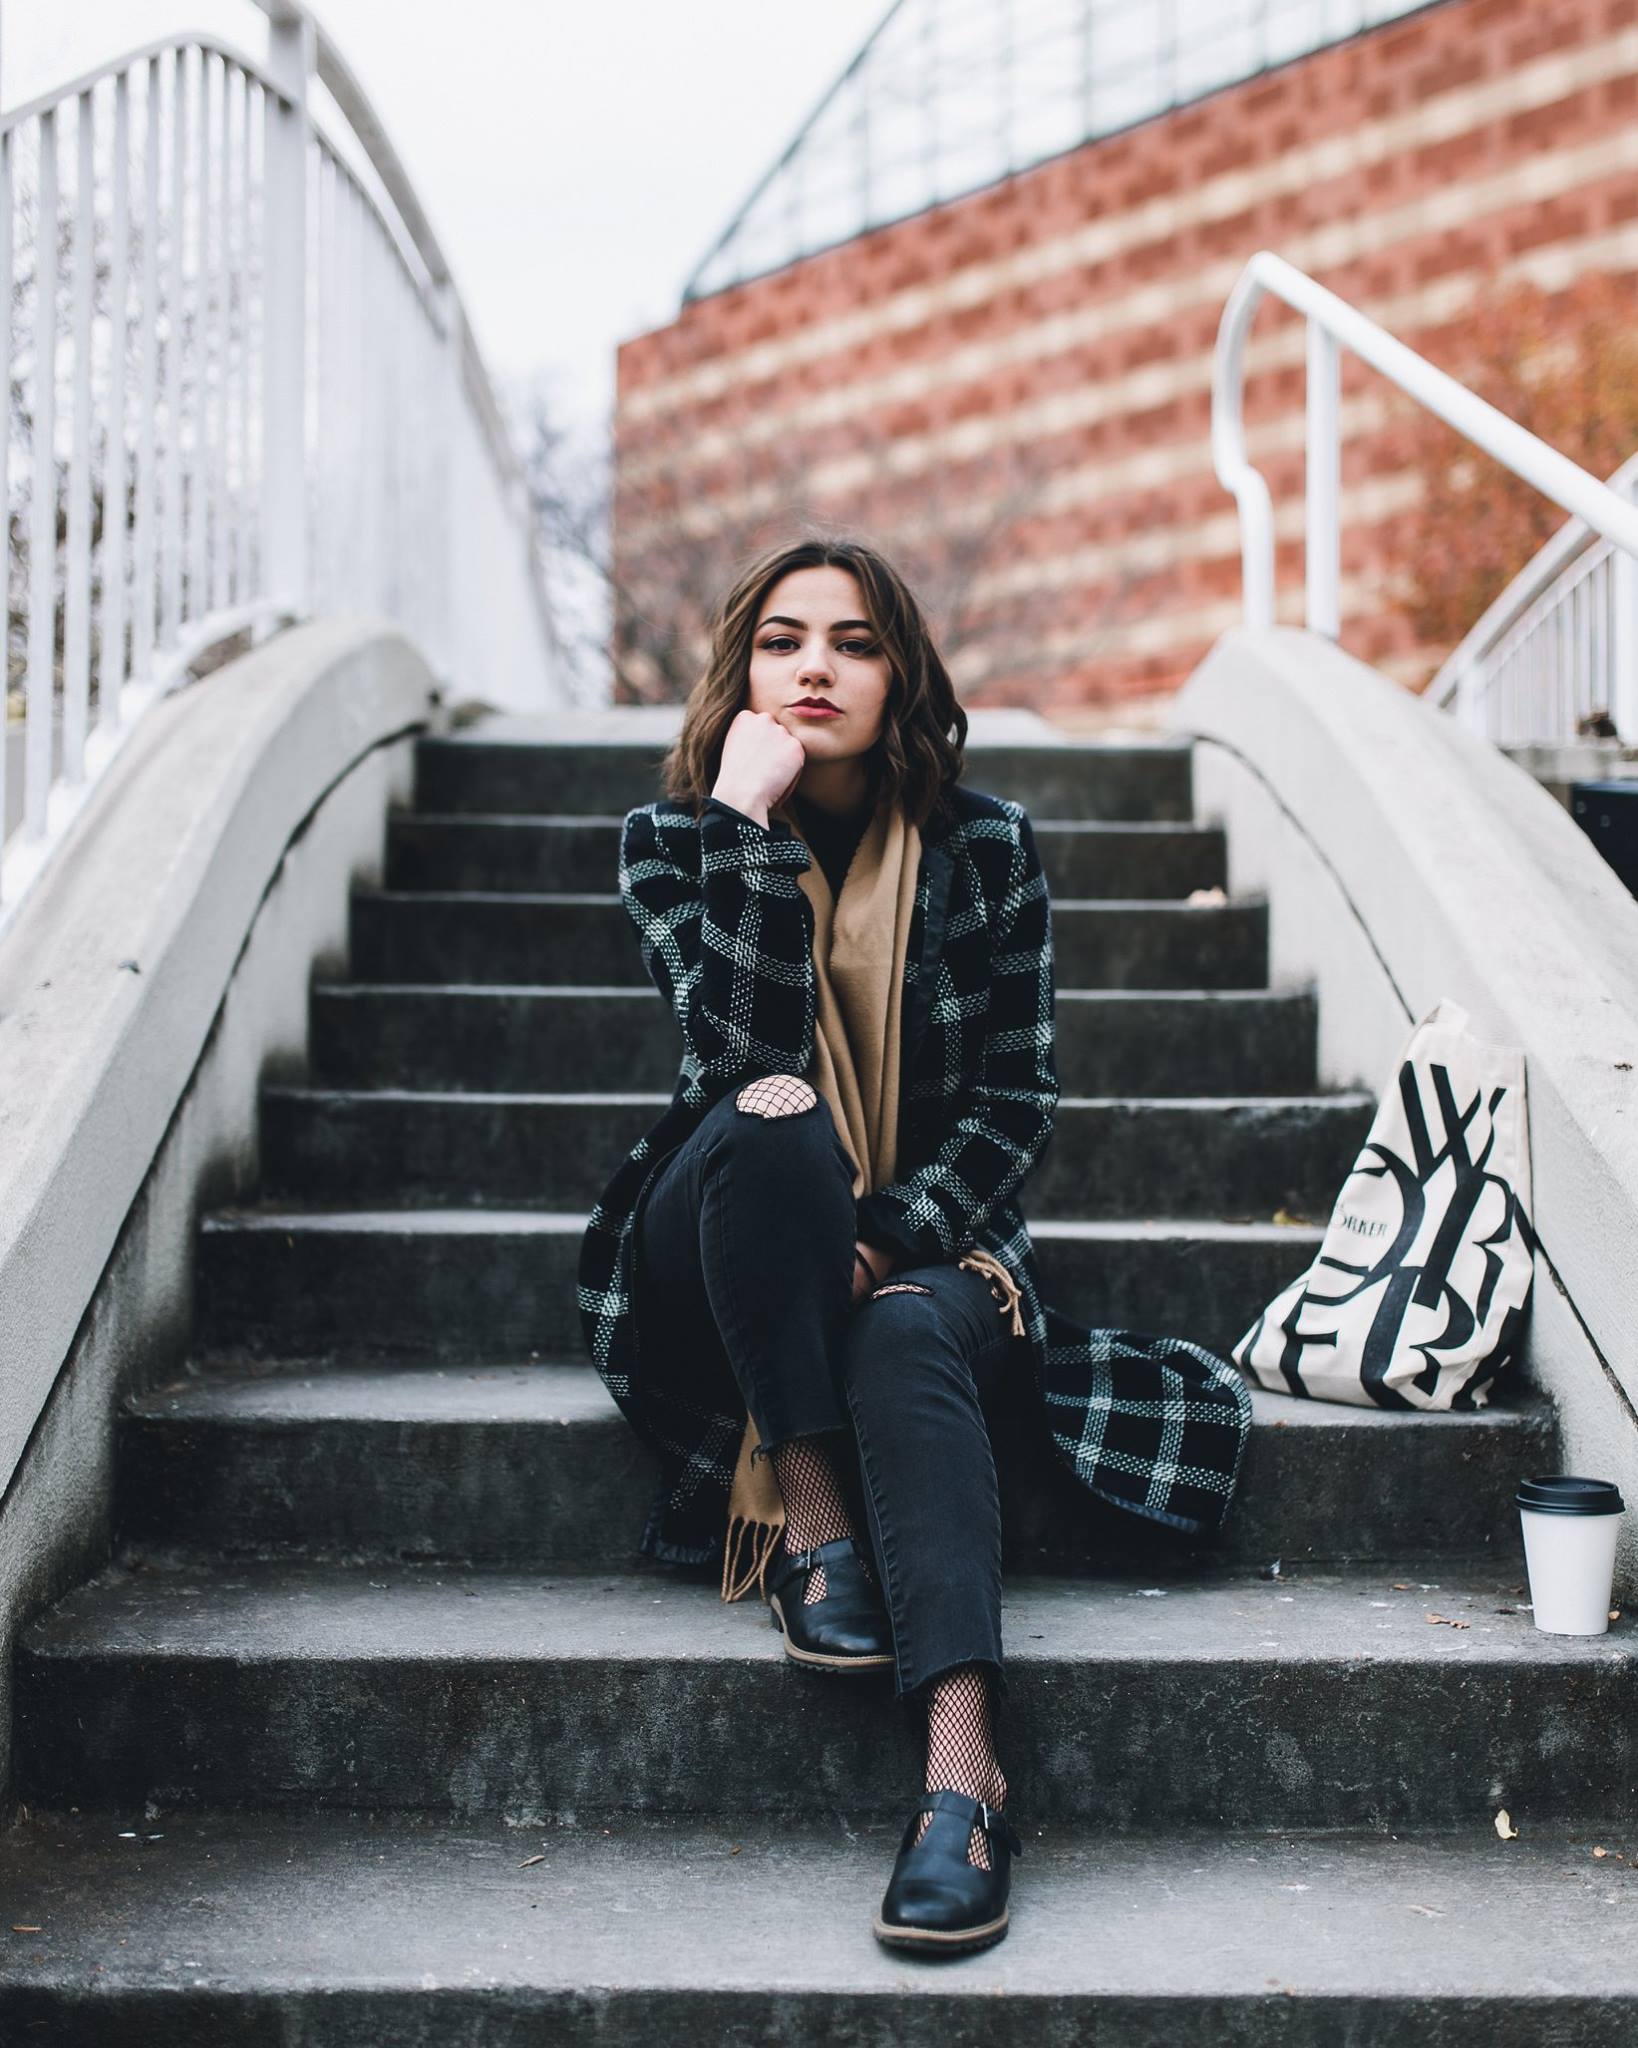 petite brunette sitting on ootdoor steps